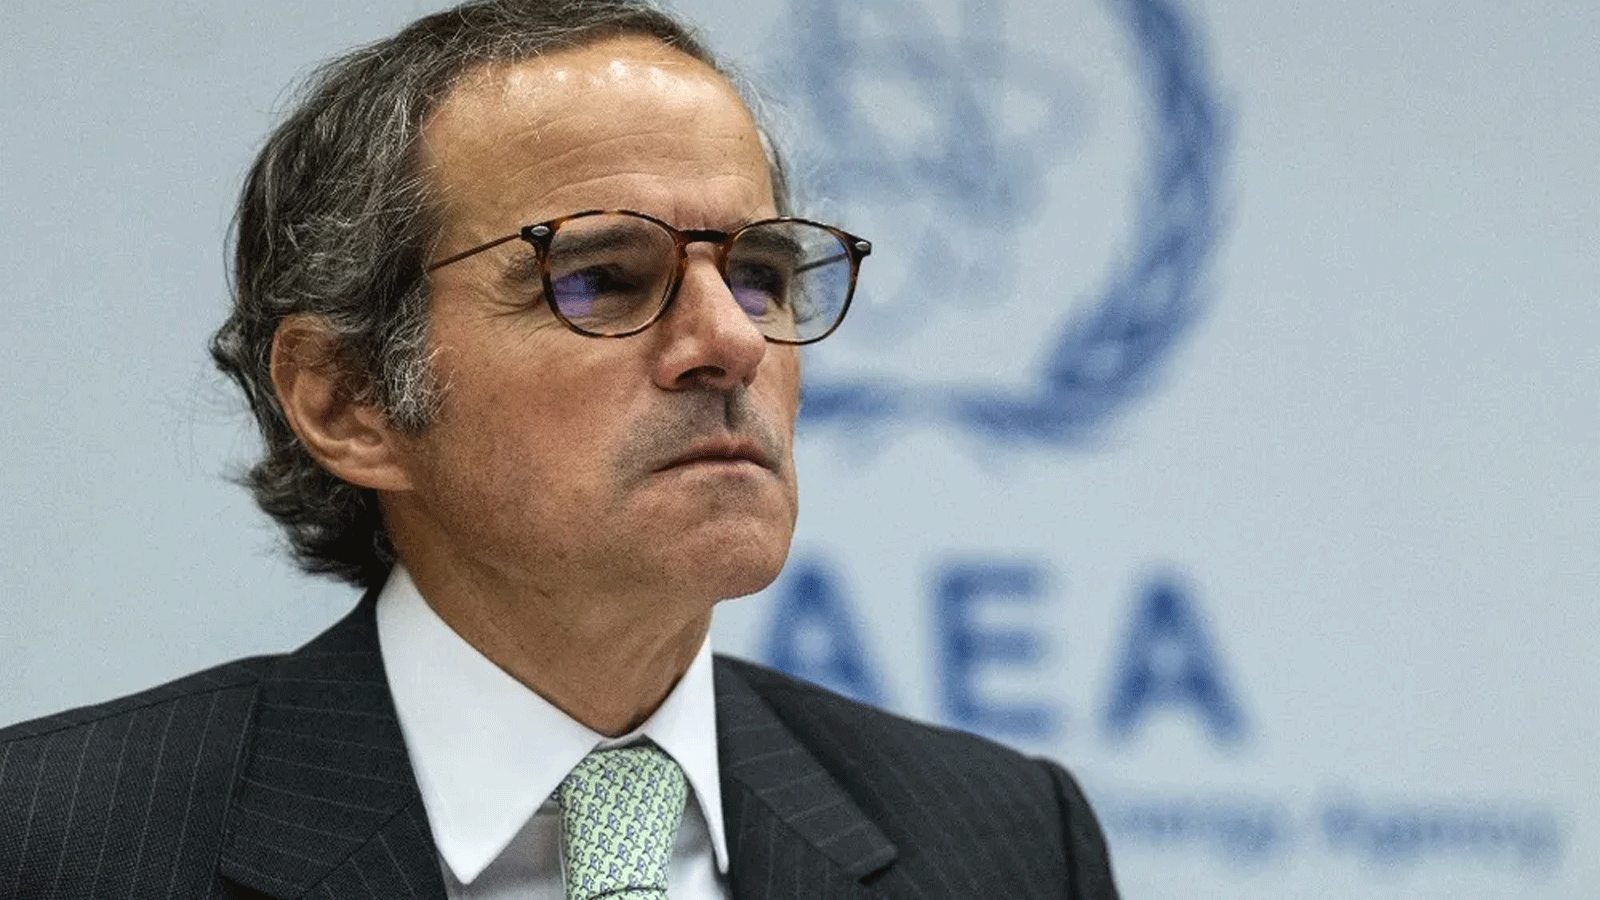 المدير العام للوكالة الدولية للطاقة الذرية التابعة للأمم المتحدة رافاييل غروسي